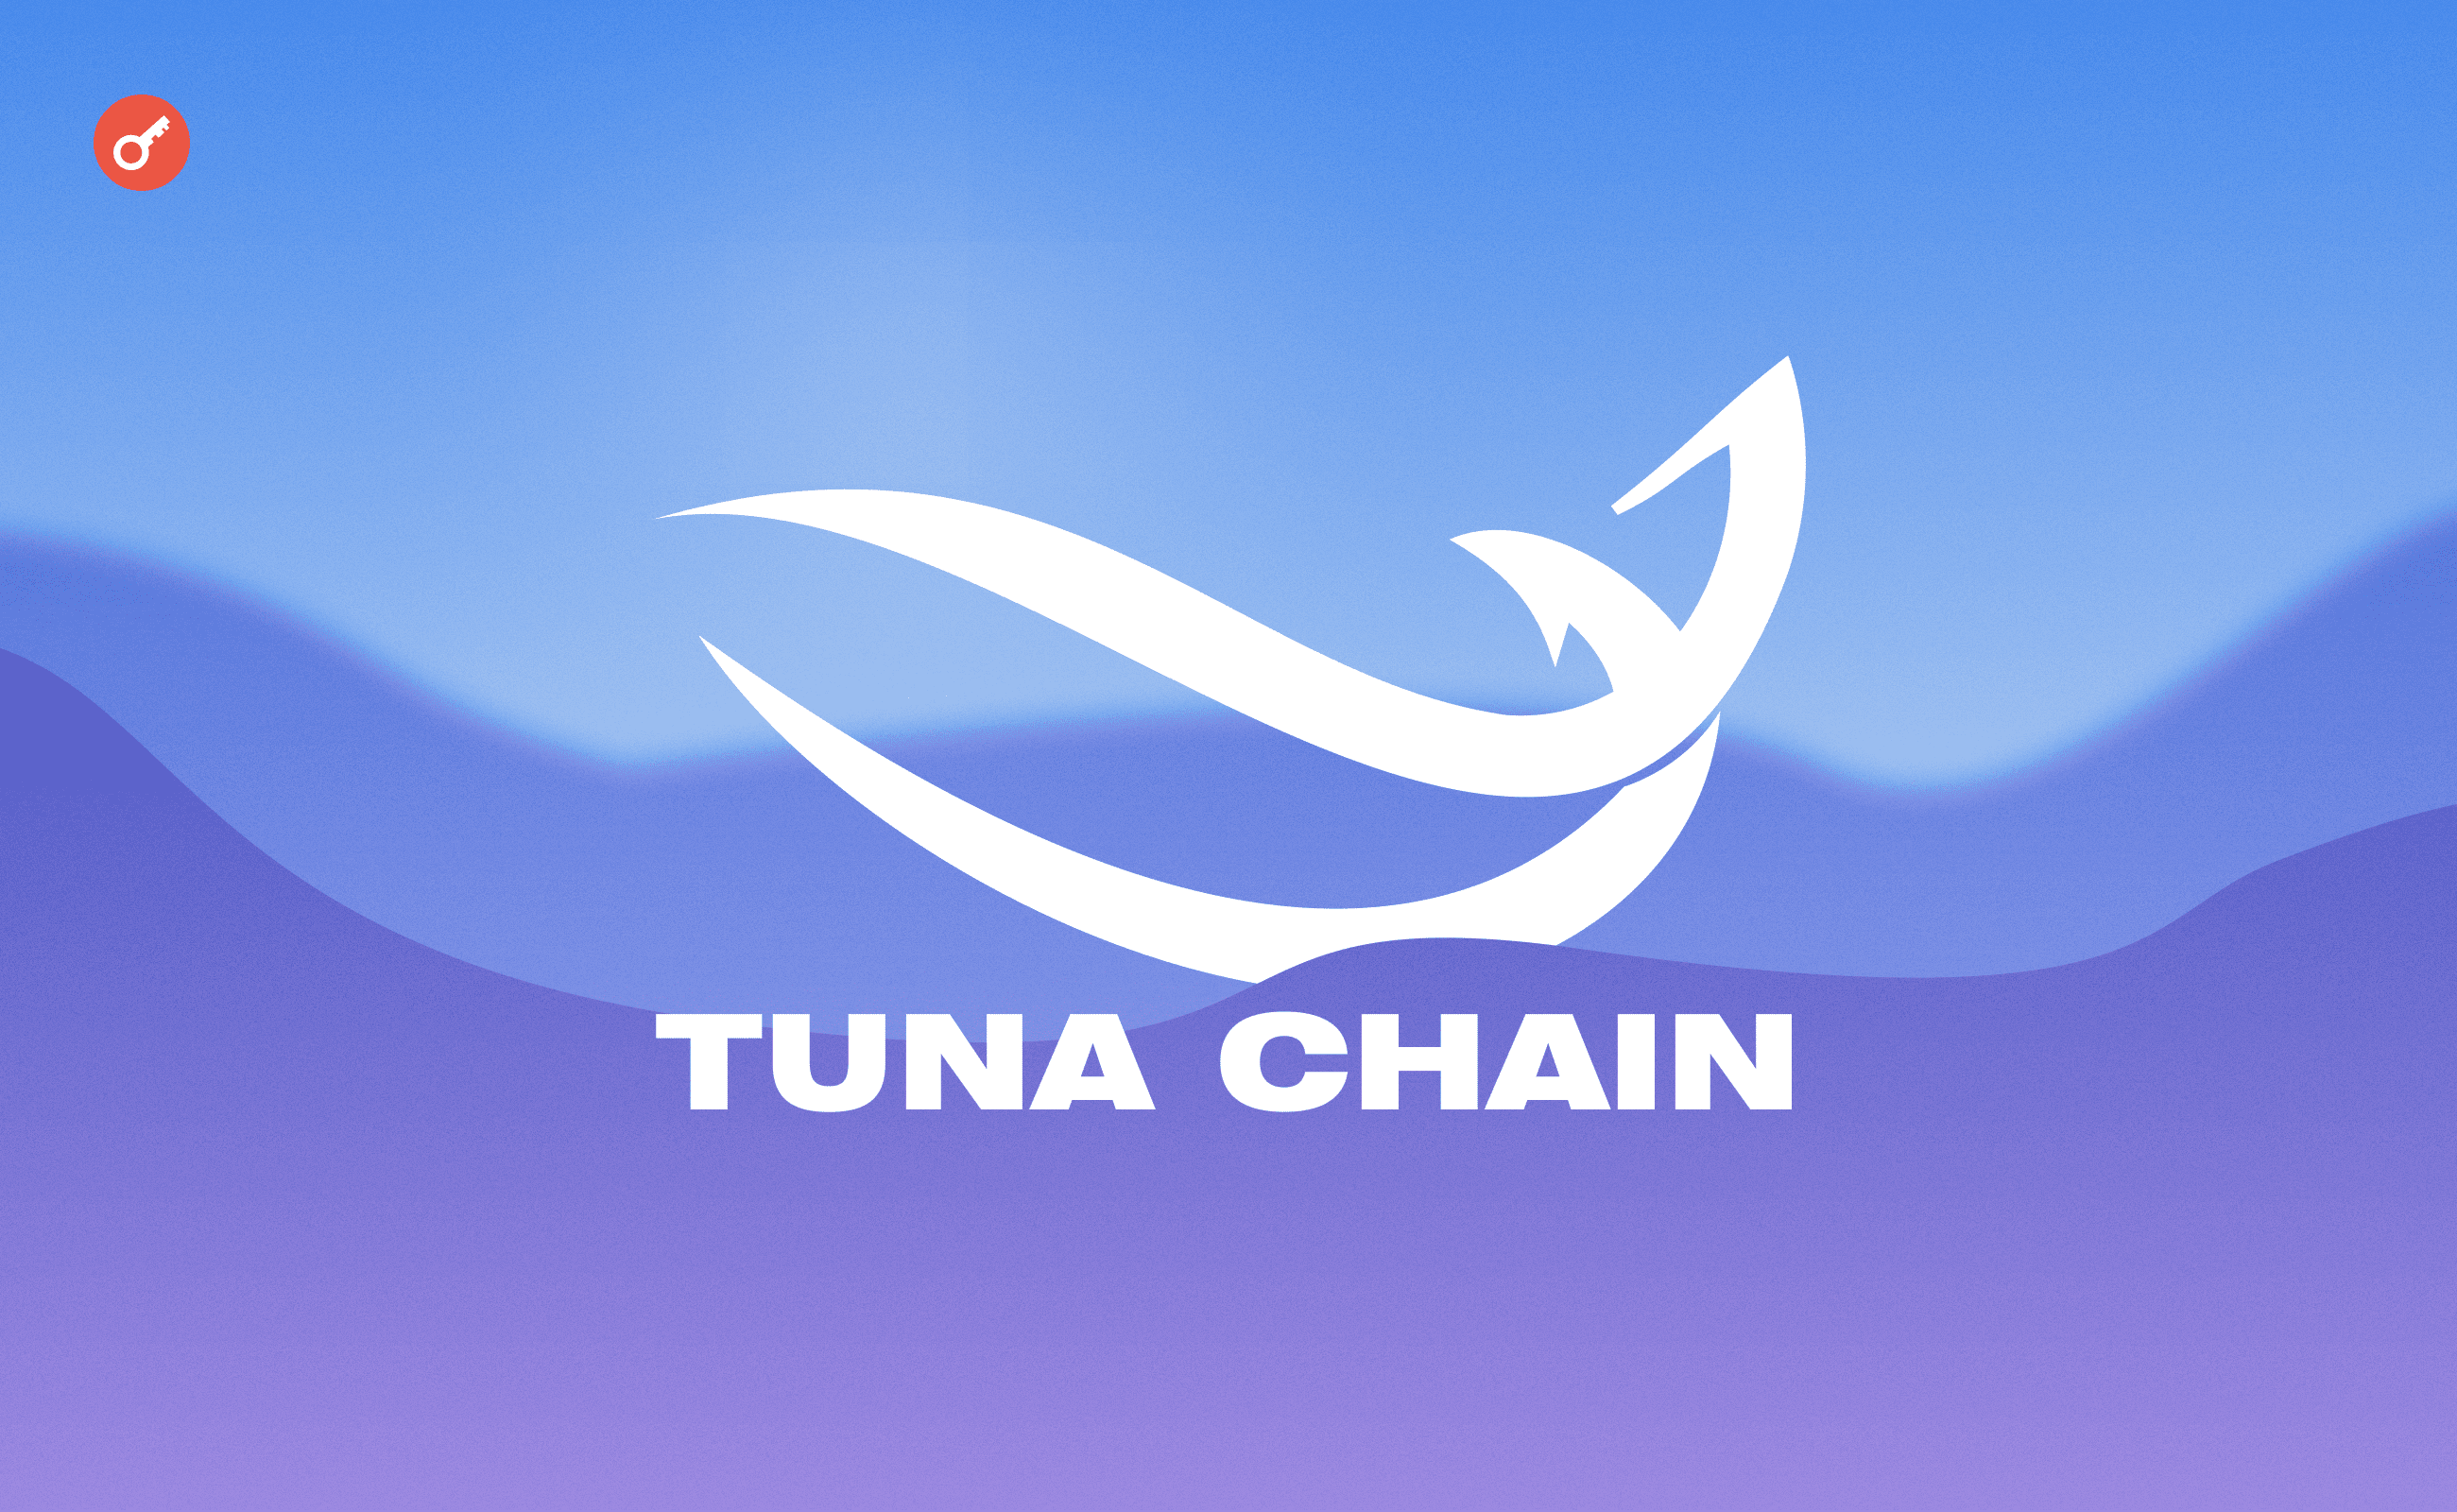 Tuna Chain: ранняя активность в проекте. Заглавный коллаж статьи.